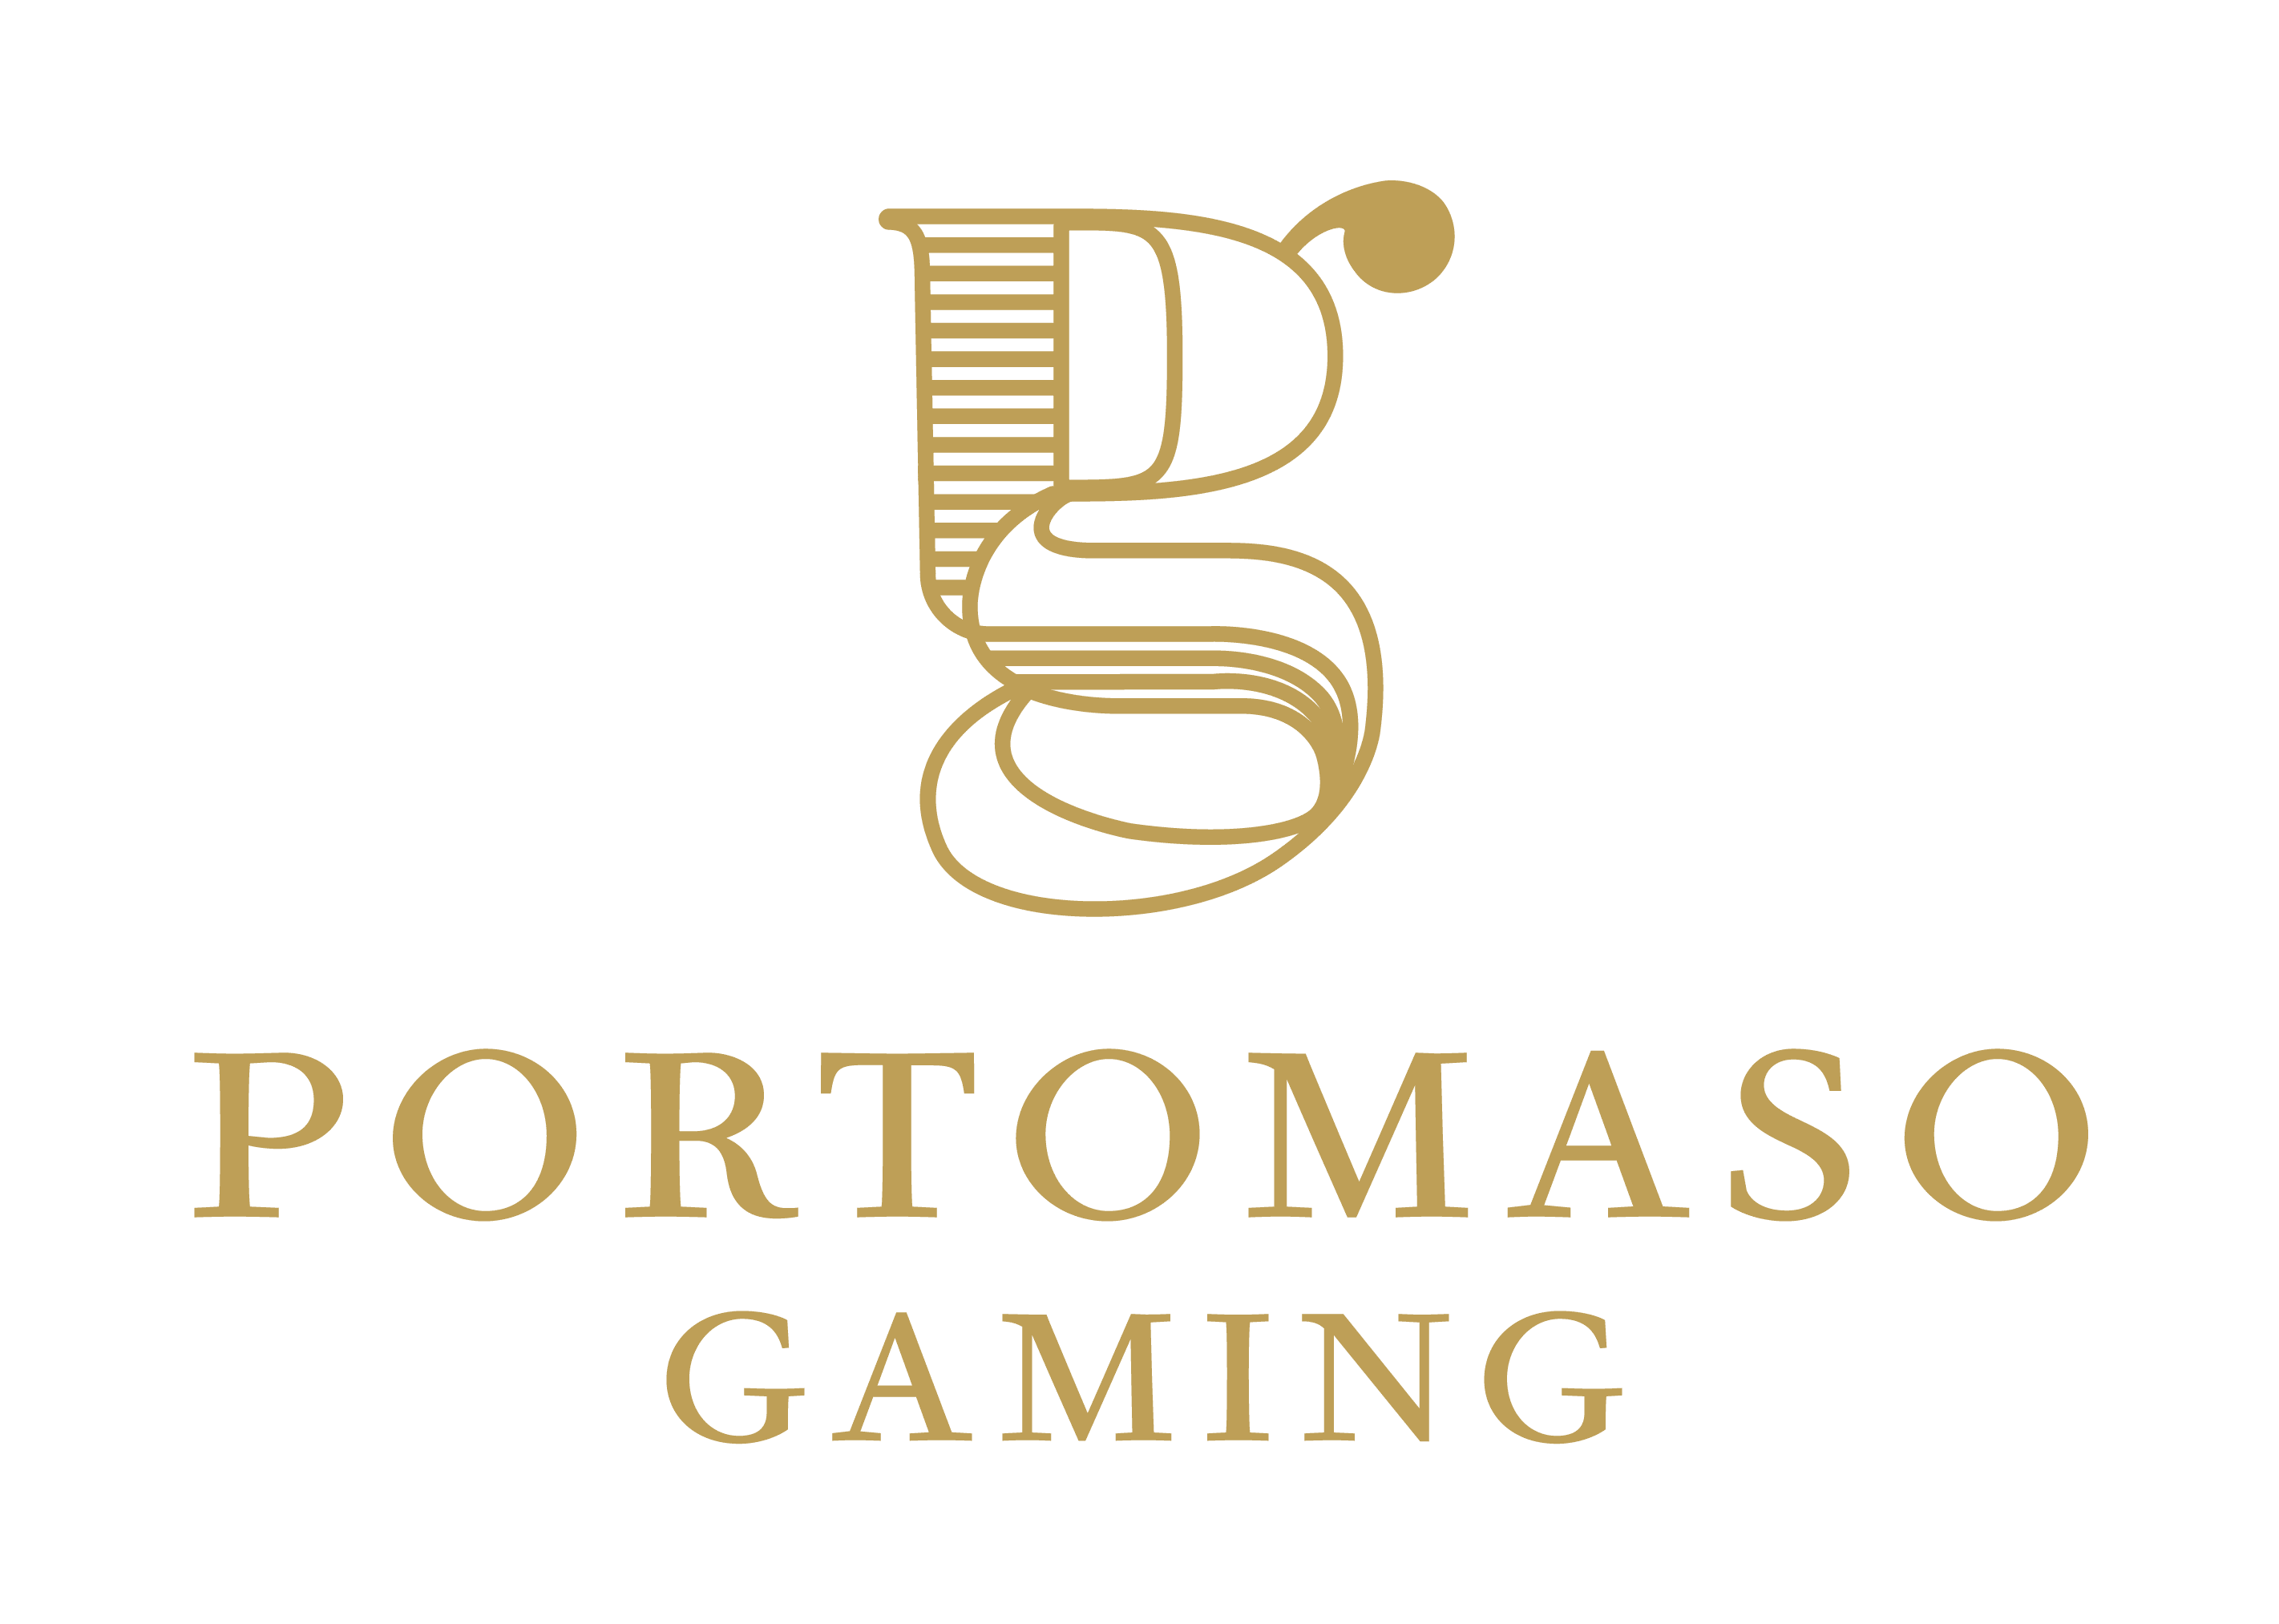 En İyi Portomaso Gaming Canlı Casinoların Sıralaması